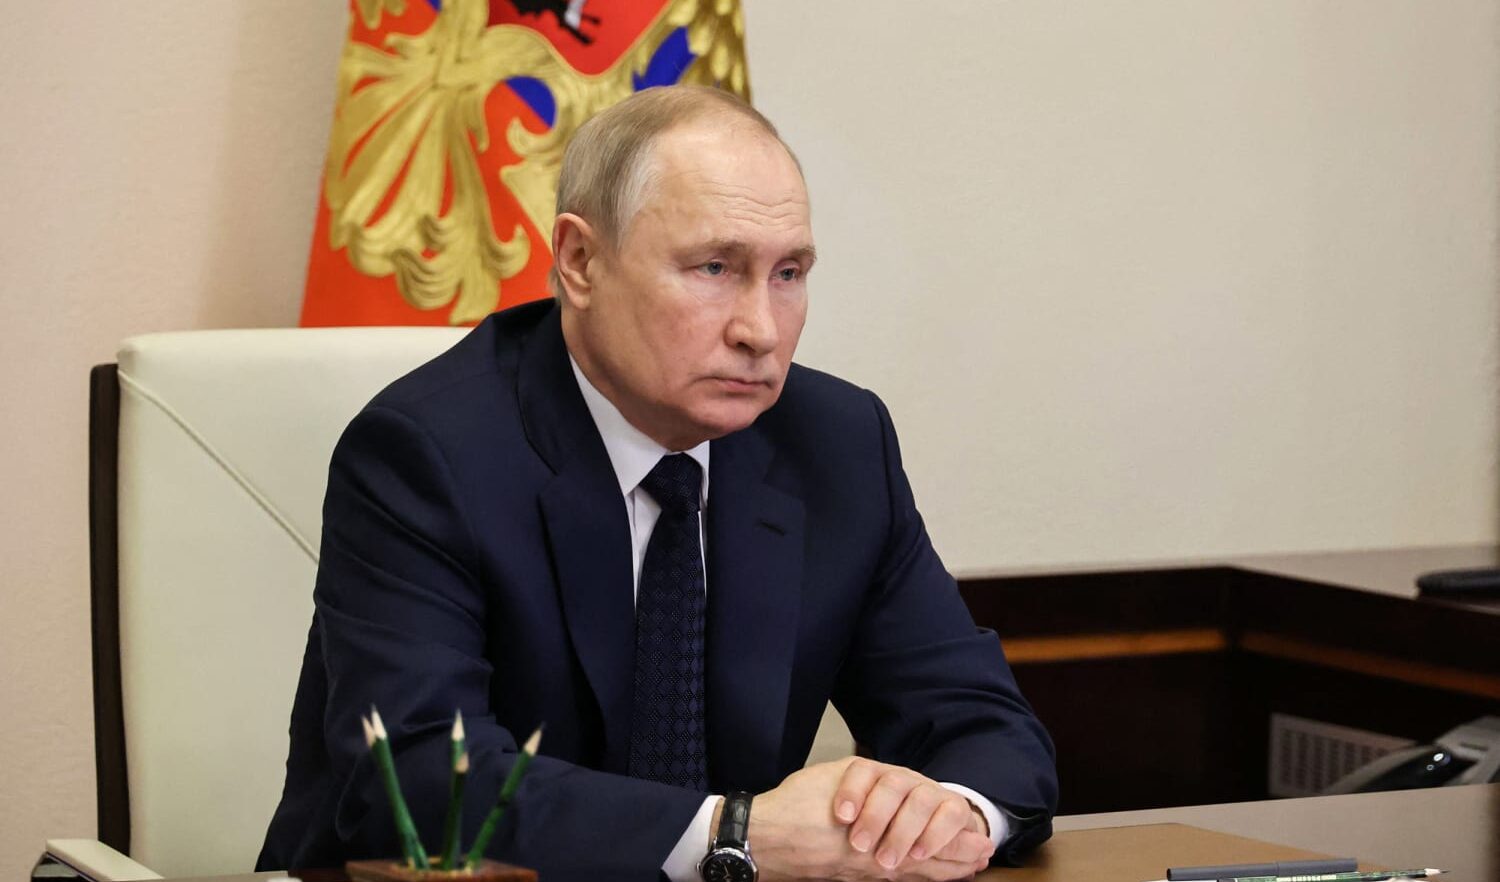 Putin stravince le elezioni senza oppositori: Usa e Gb parlano di votazioni non libere